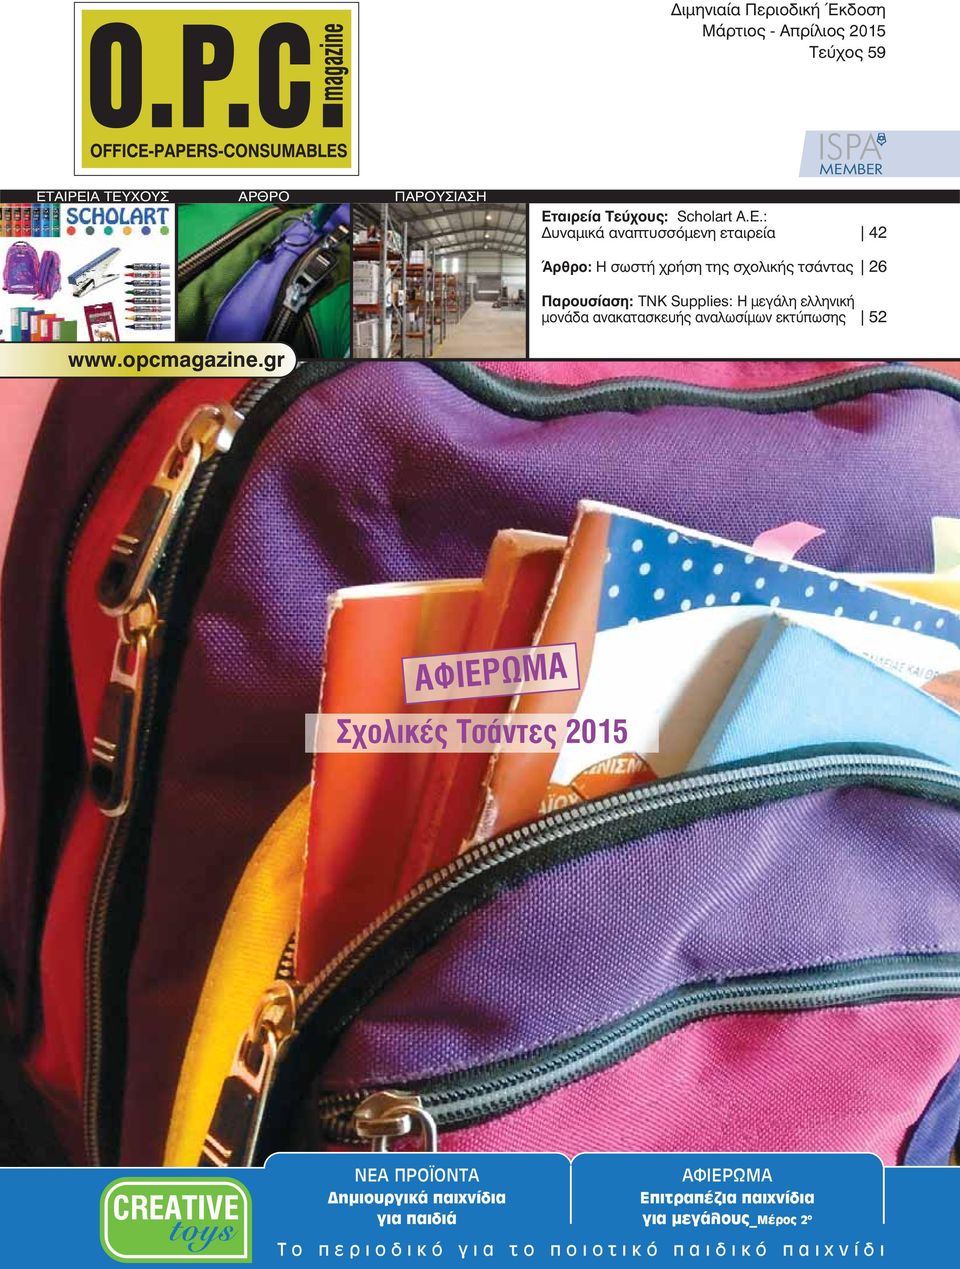 : Δυναμικά αναπτυσσόμενη εταιρεία 42 Άρθρο: Η σωστή χρήση της σχολικής τσάντας 26 Παρουσίαση: ΤΝΚ Supplies: Η μεγάλη